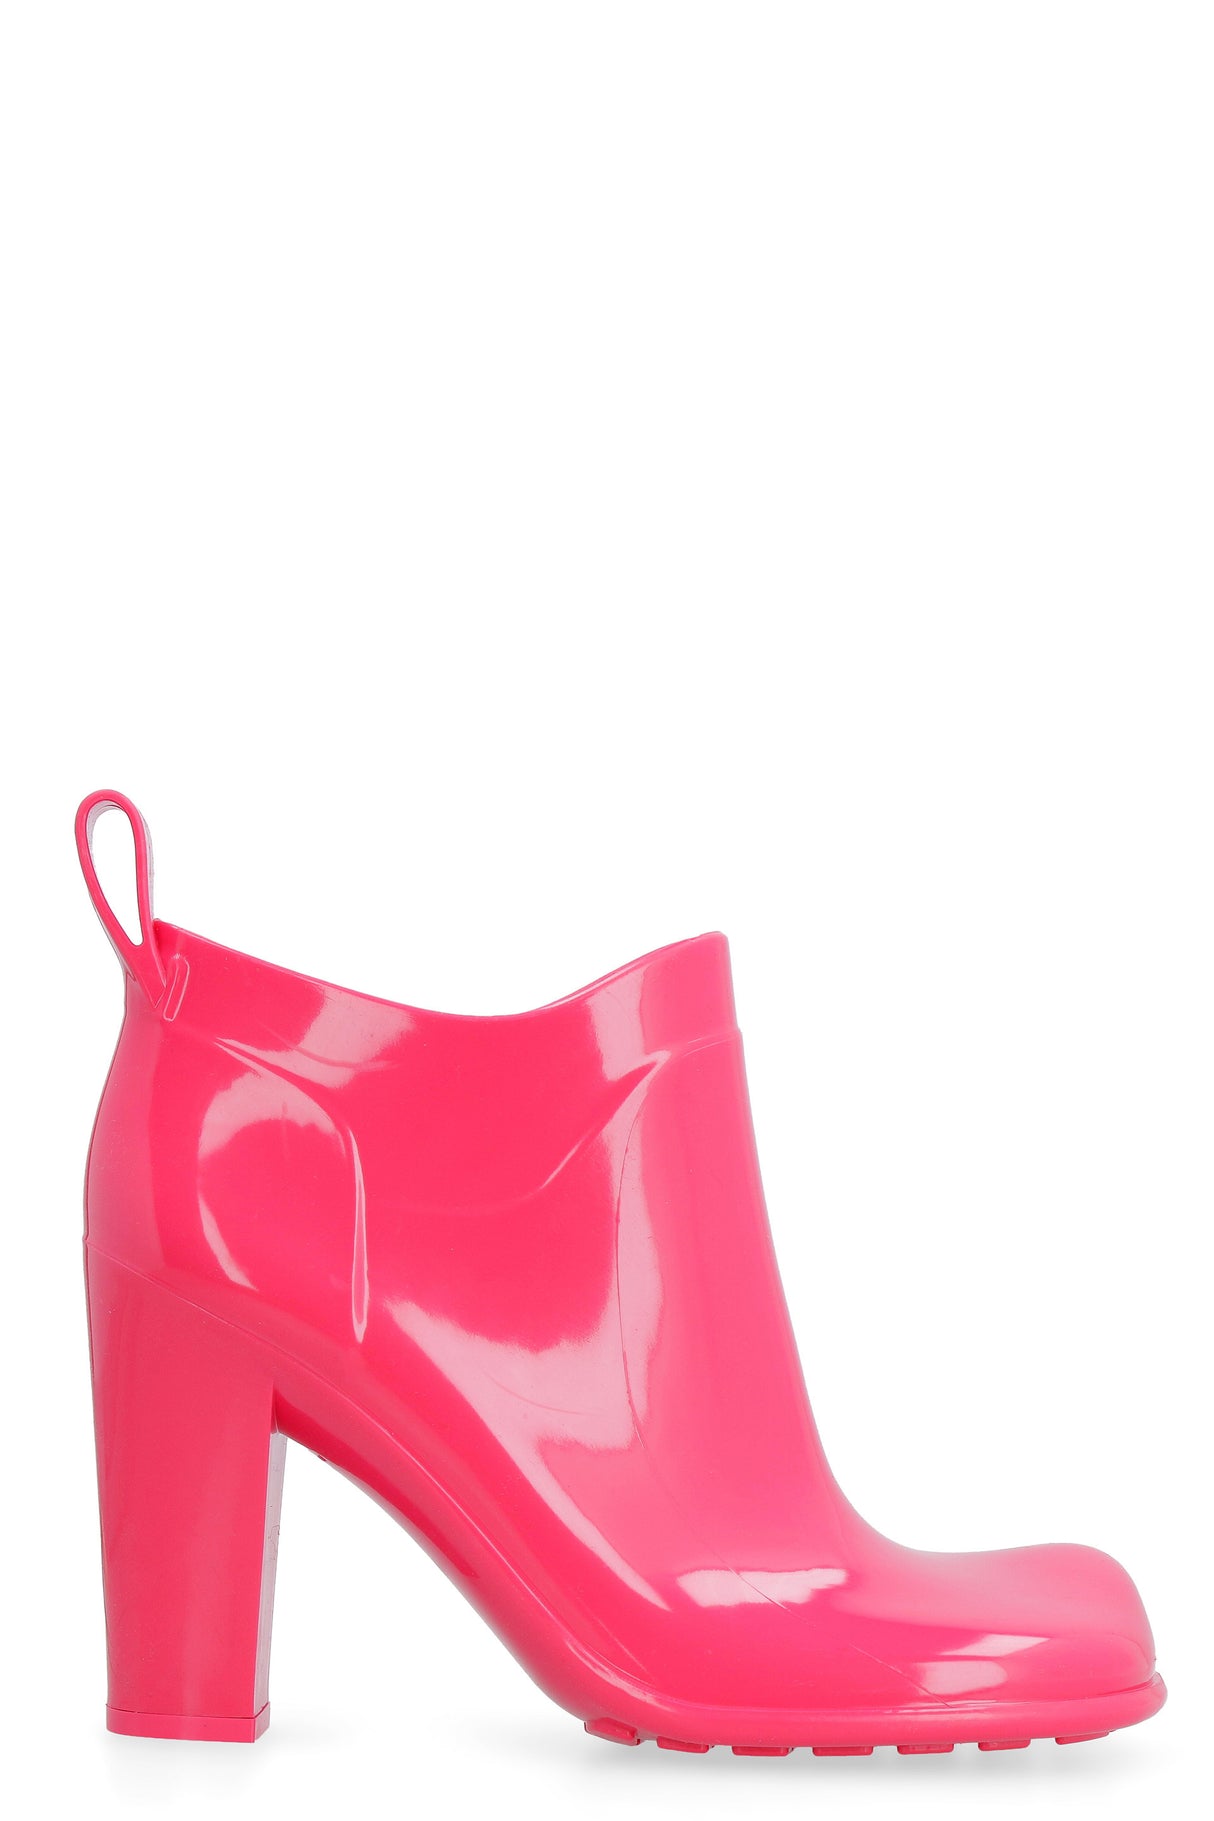 BOTTEGA VENETA Fuchsia Rubber Ankle Boots for Women - FW24 Collection